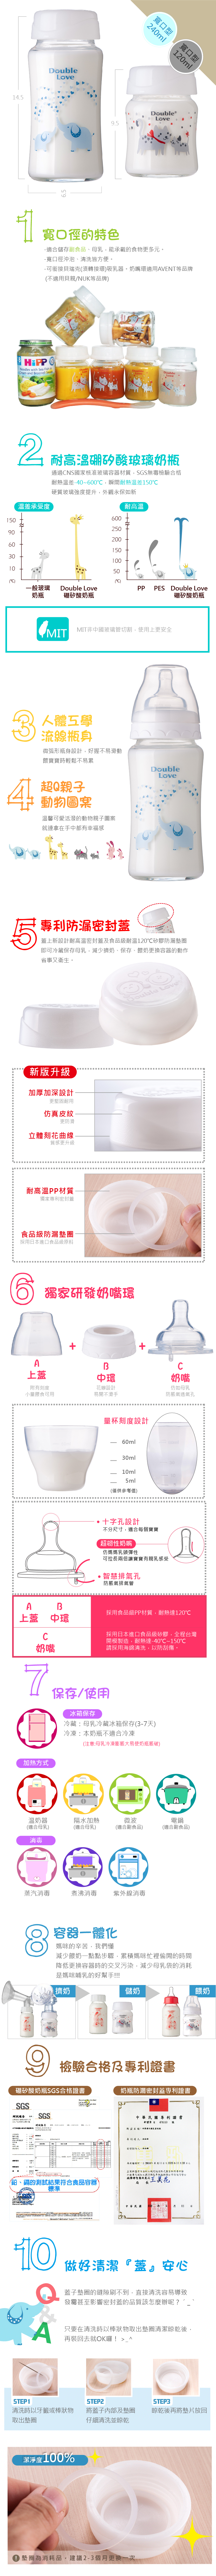 儲奶瓶玻璃奶瓶(8件套組)【A10064】台灣製造DL 寬口 雙蓋 母乳實感 玻璃奶瓶 母乳儲存瓶 新生兒